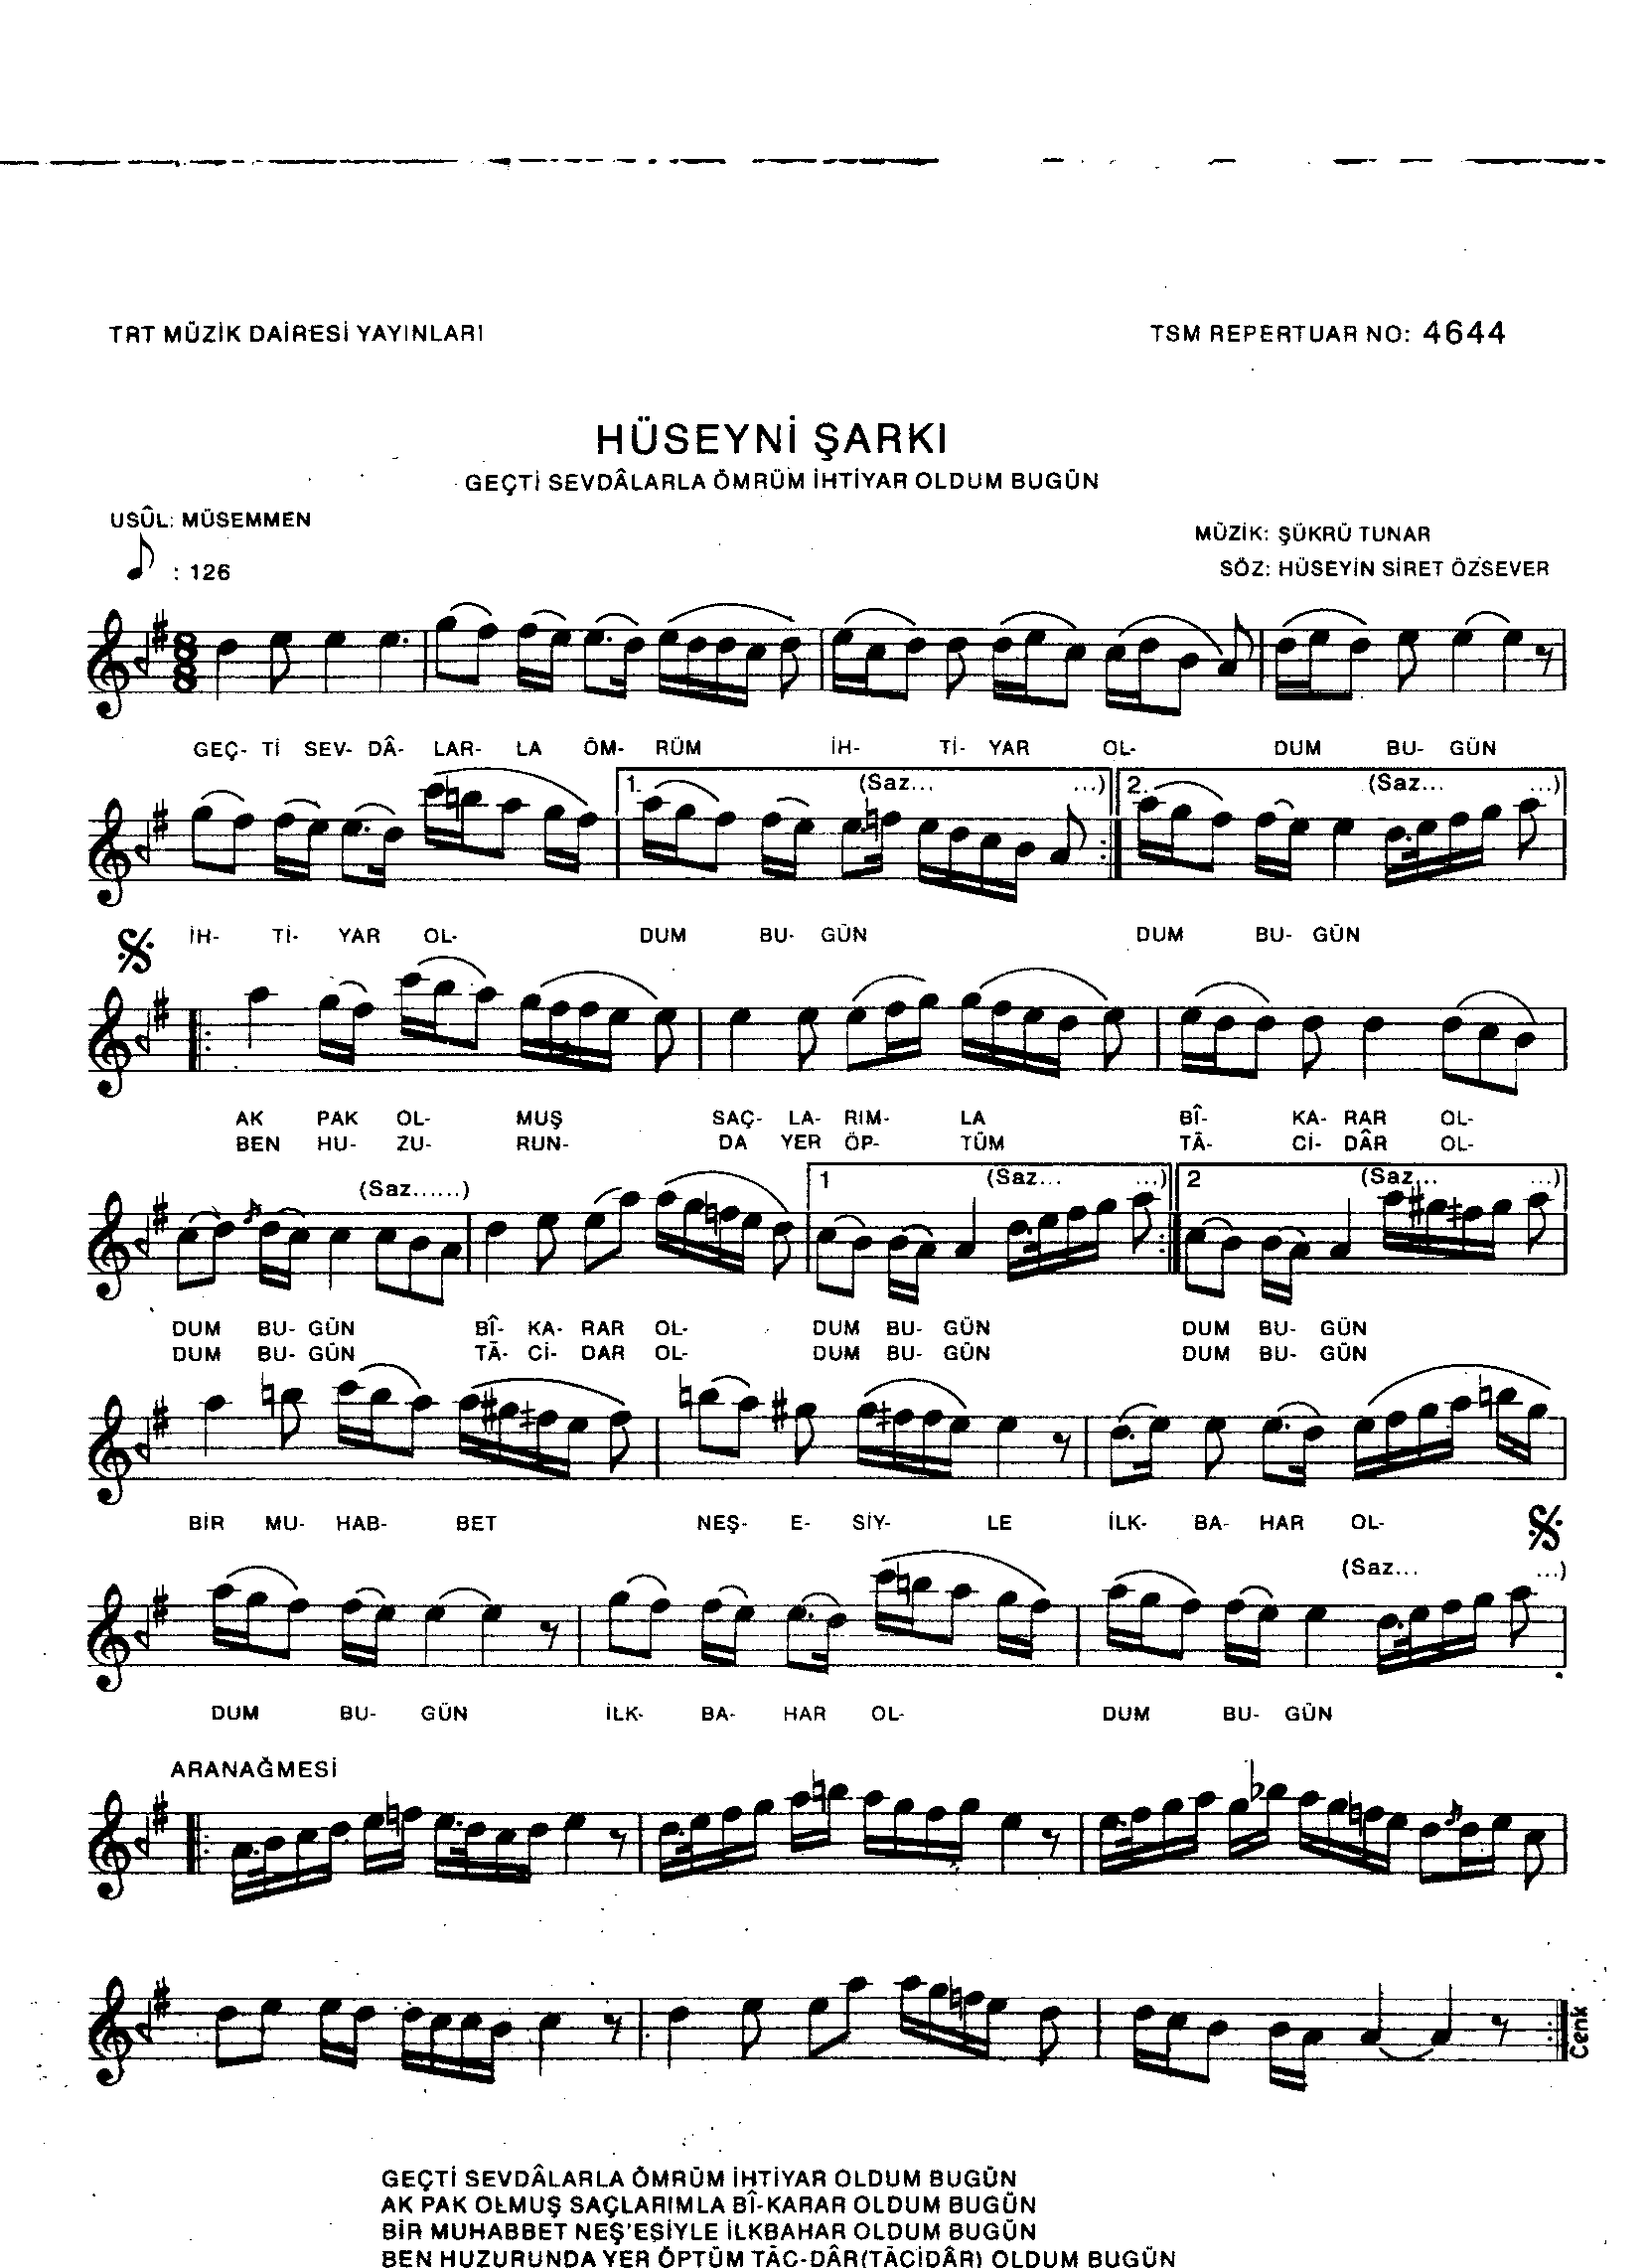 Hüseynî - Şarkı - Şükrü Tunar - Sayfa 1